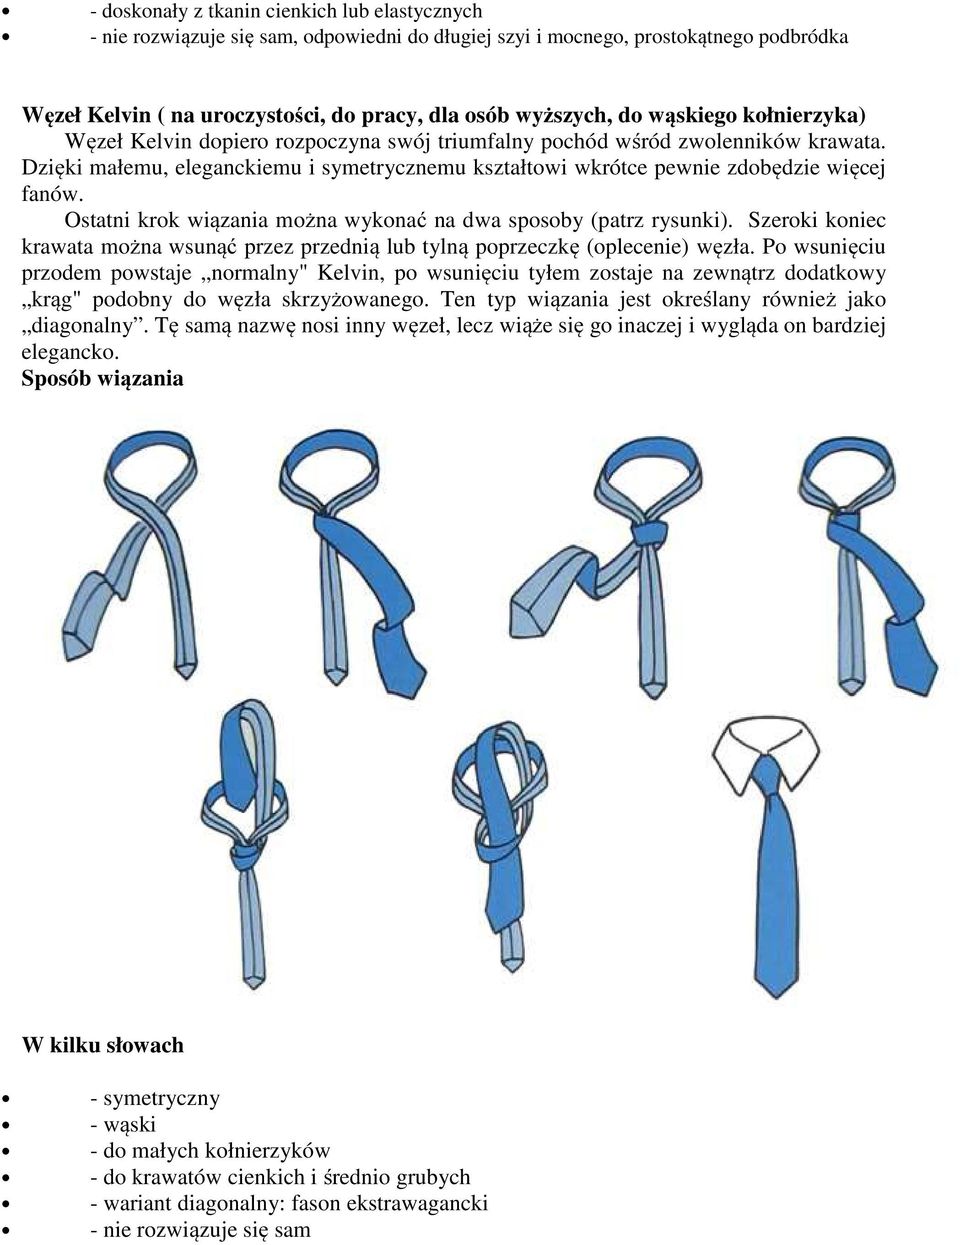 Ostatni krok wiązania można wykonać na dwa sposoby (patrz rysunki). Szeroki koniec krawata można wsunąć przez przednią lub tylną poprzeczkę (oplecenie) węzła.